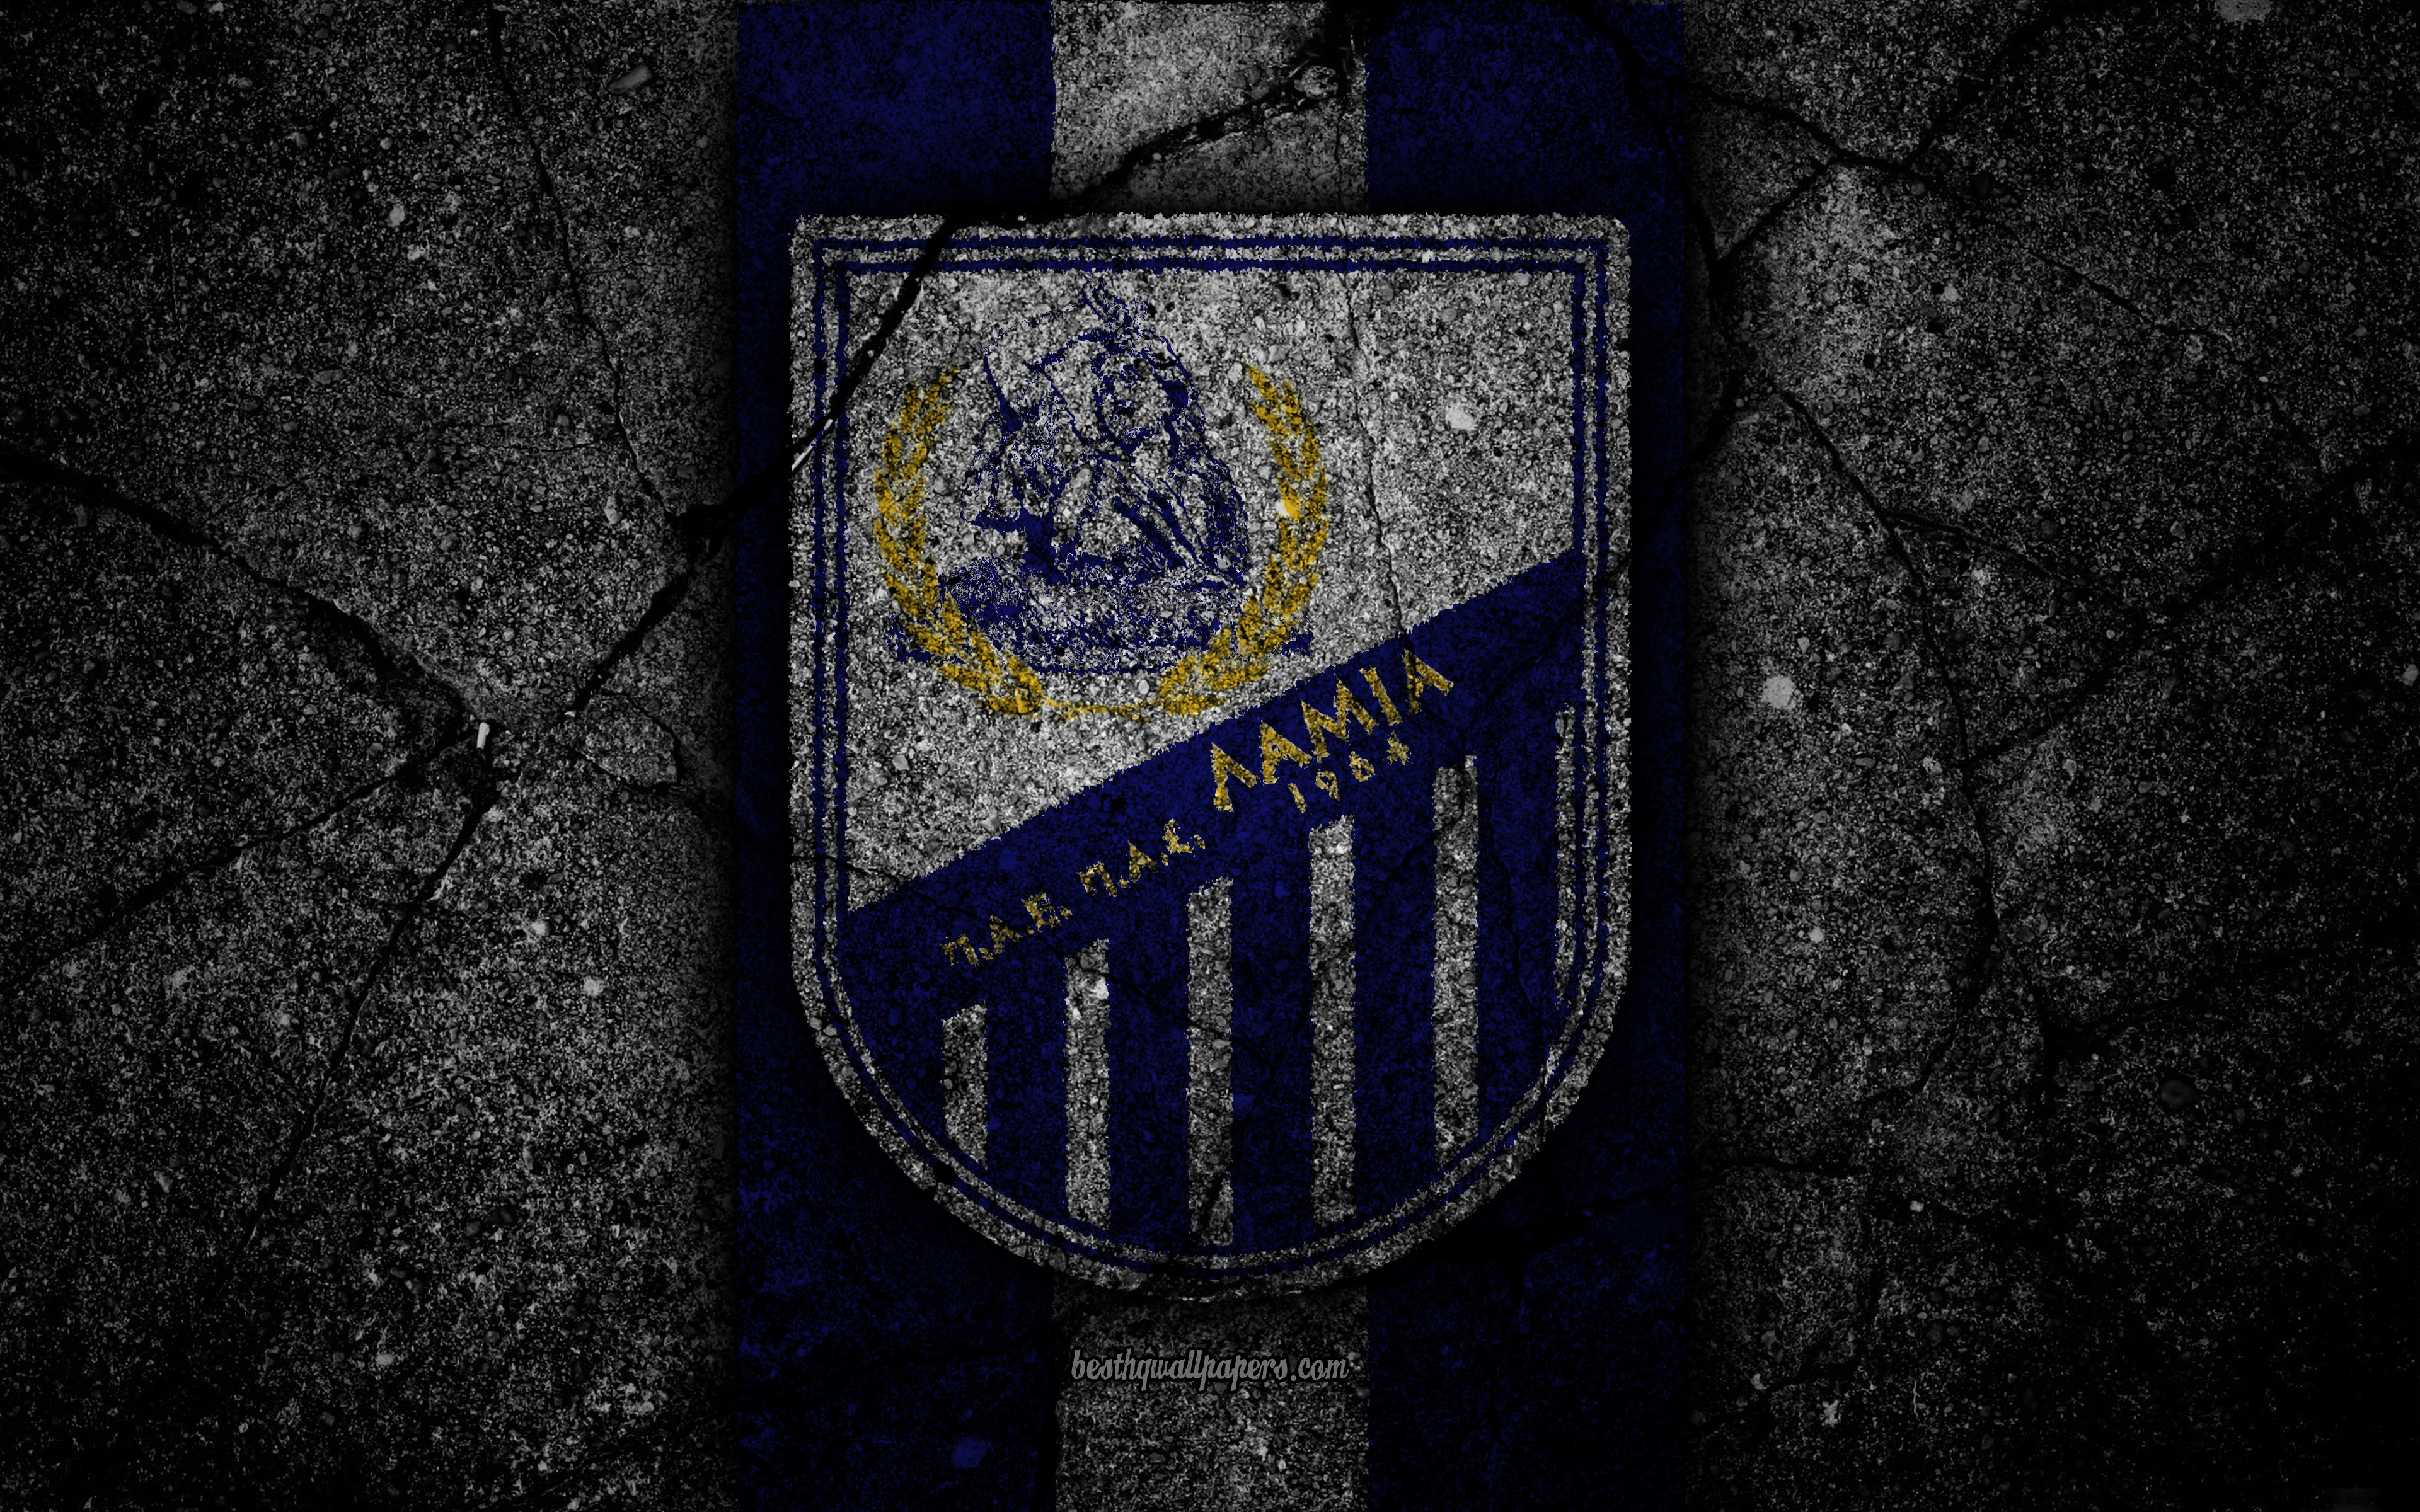 Descarga gratuita de fondo de pantalla para móvil de Fútbol, Logo, Emblema, Deporte, Pas Lamia 1964.